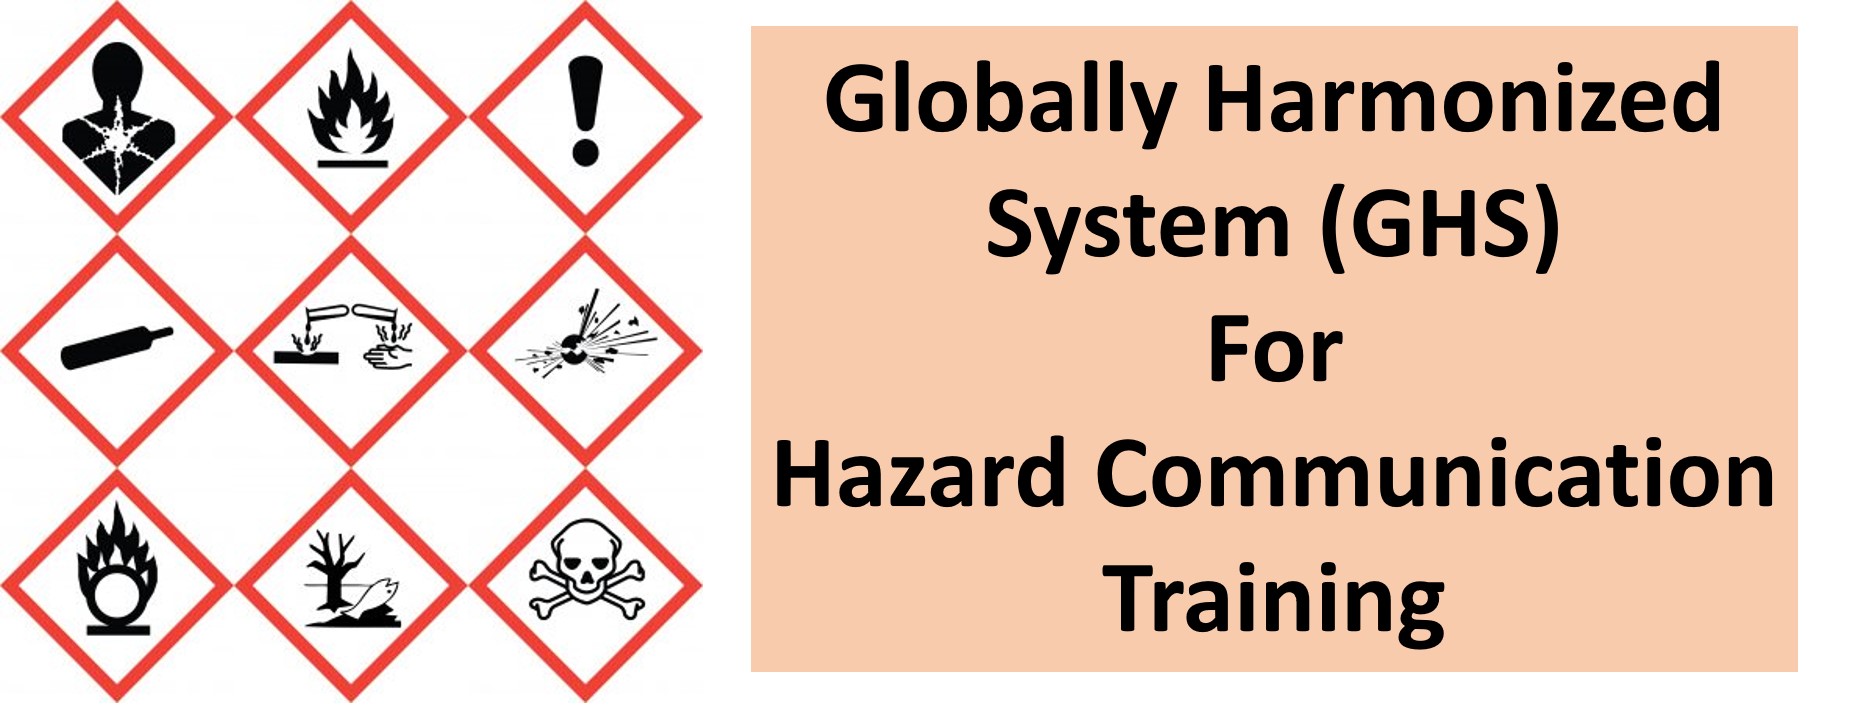 Globally Harmonized System for Hazard Communication Training